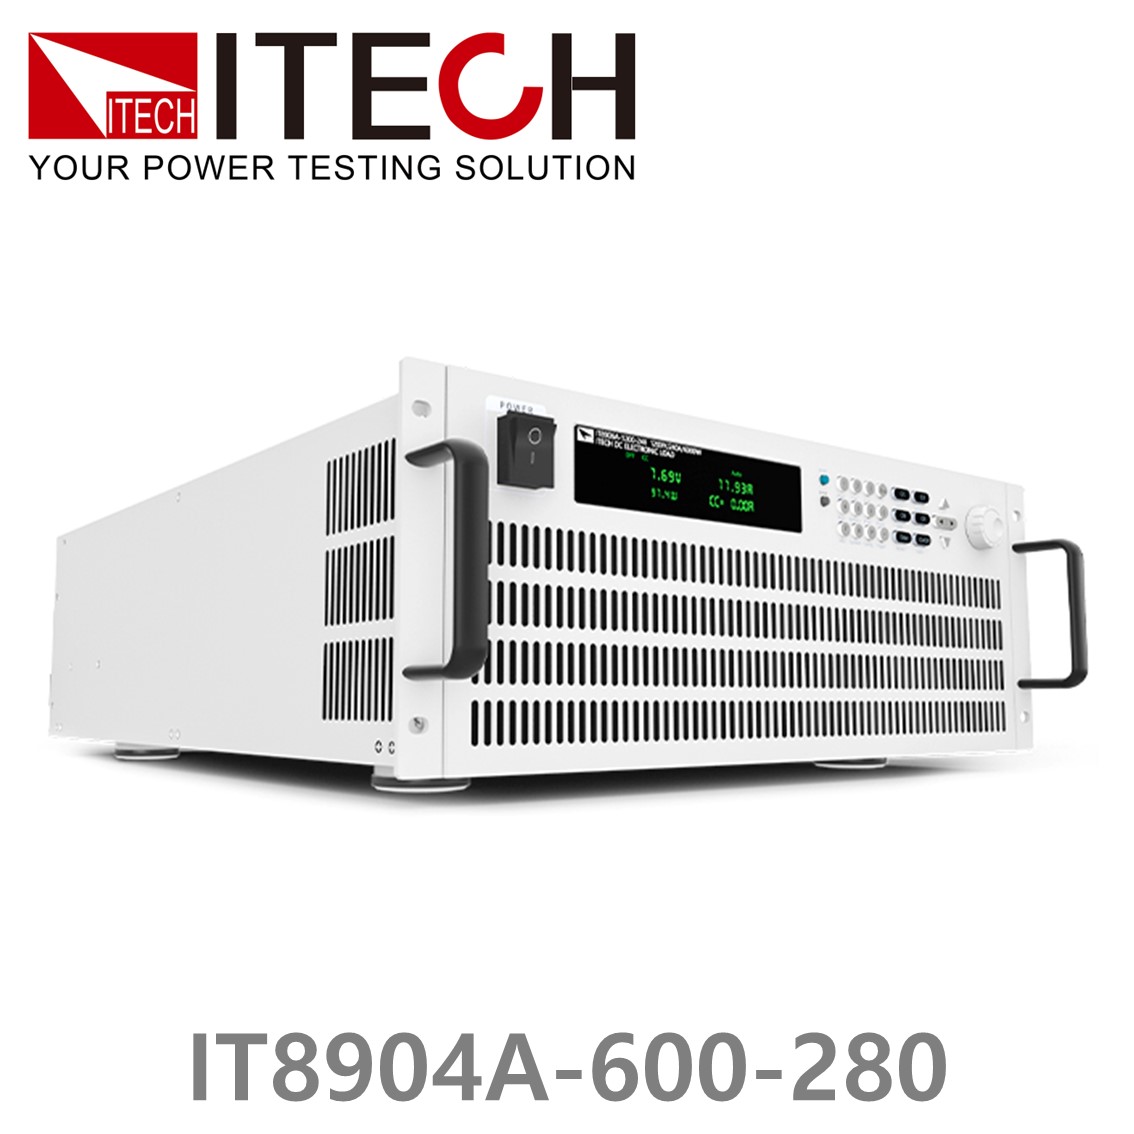 [ ITECH ] IT8904A-600-280  고성능 고전력 DC 전자로드 600V/280A/4kW (4U)